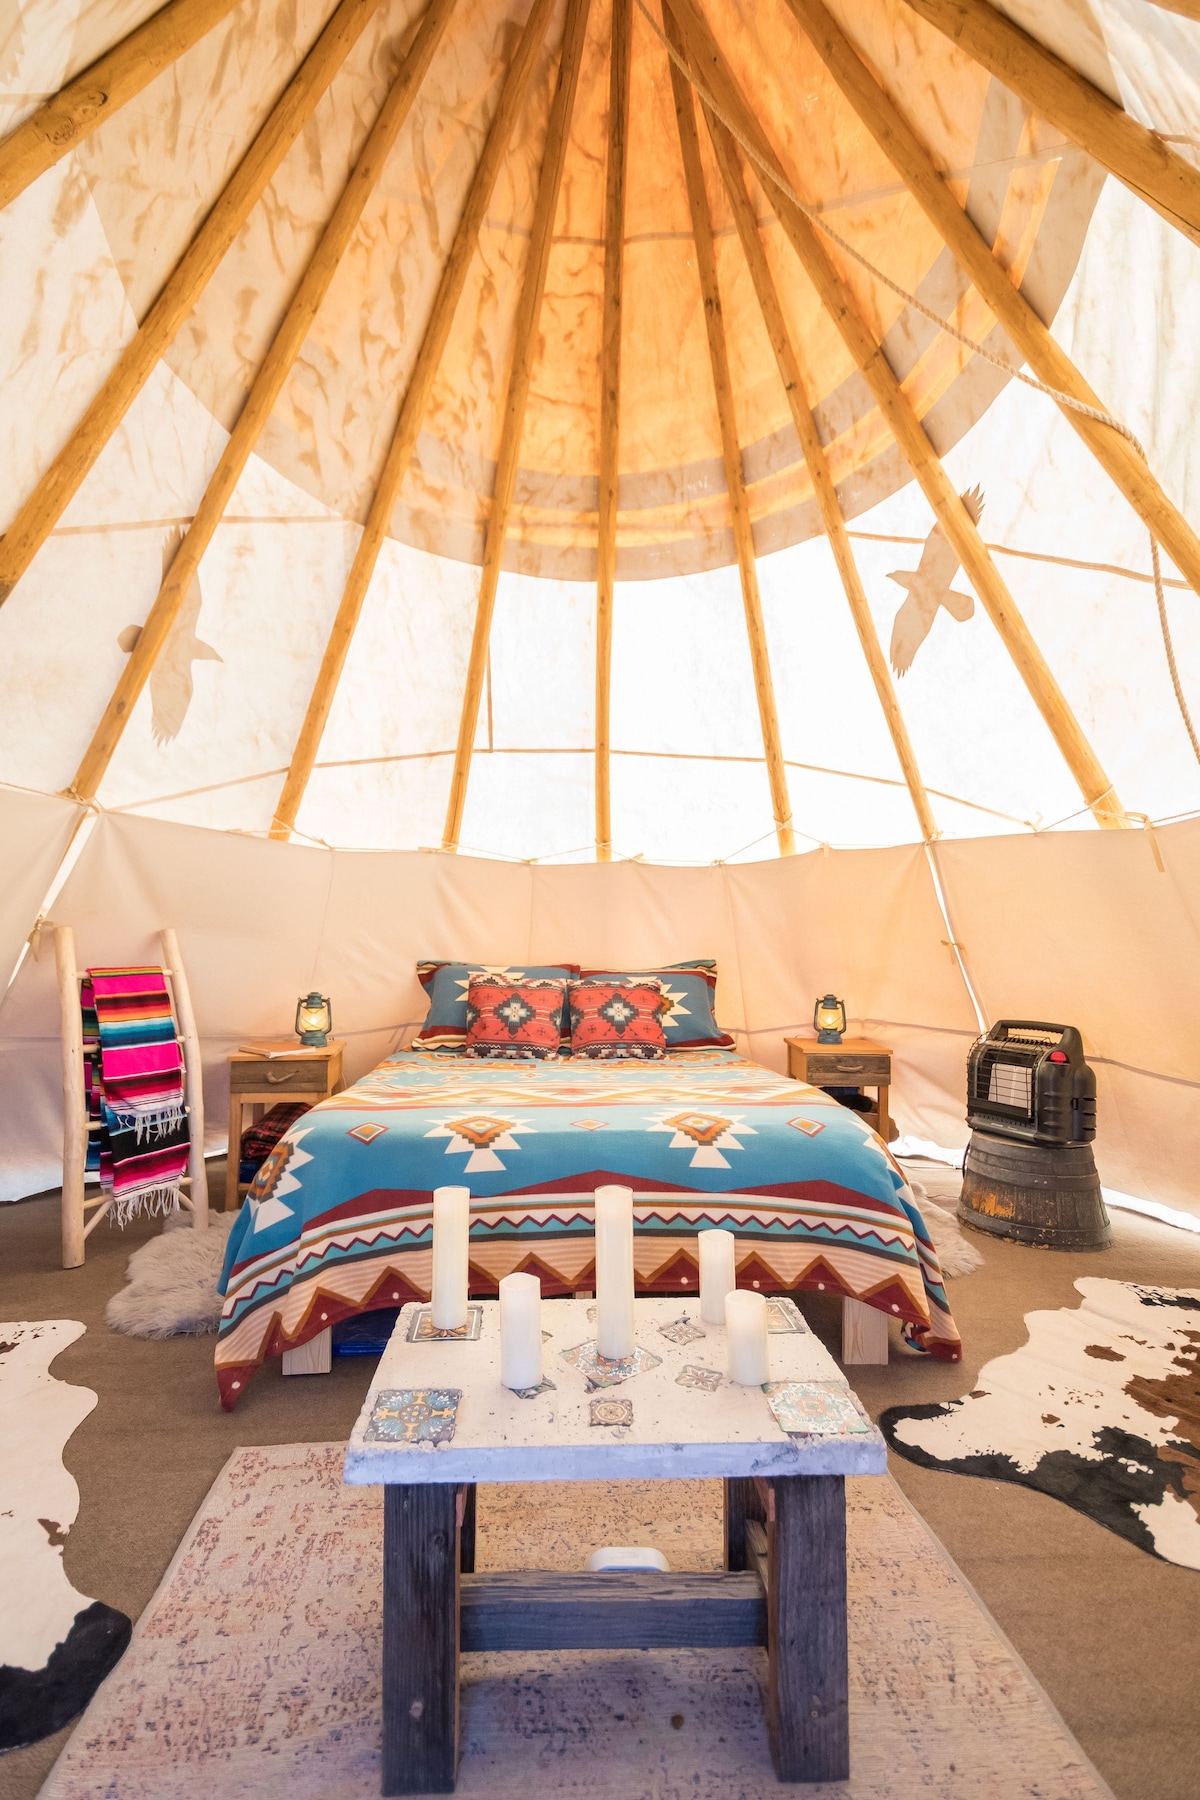 拉斯维加斯附近莫哈韦的乌鸦巢印第安帐篷